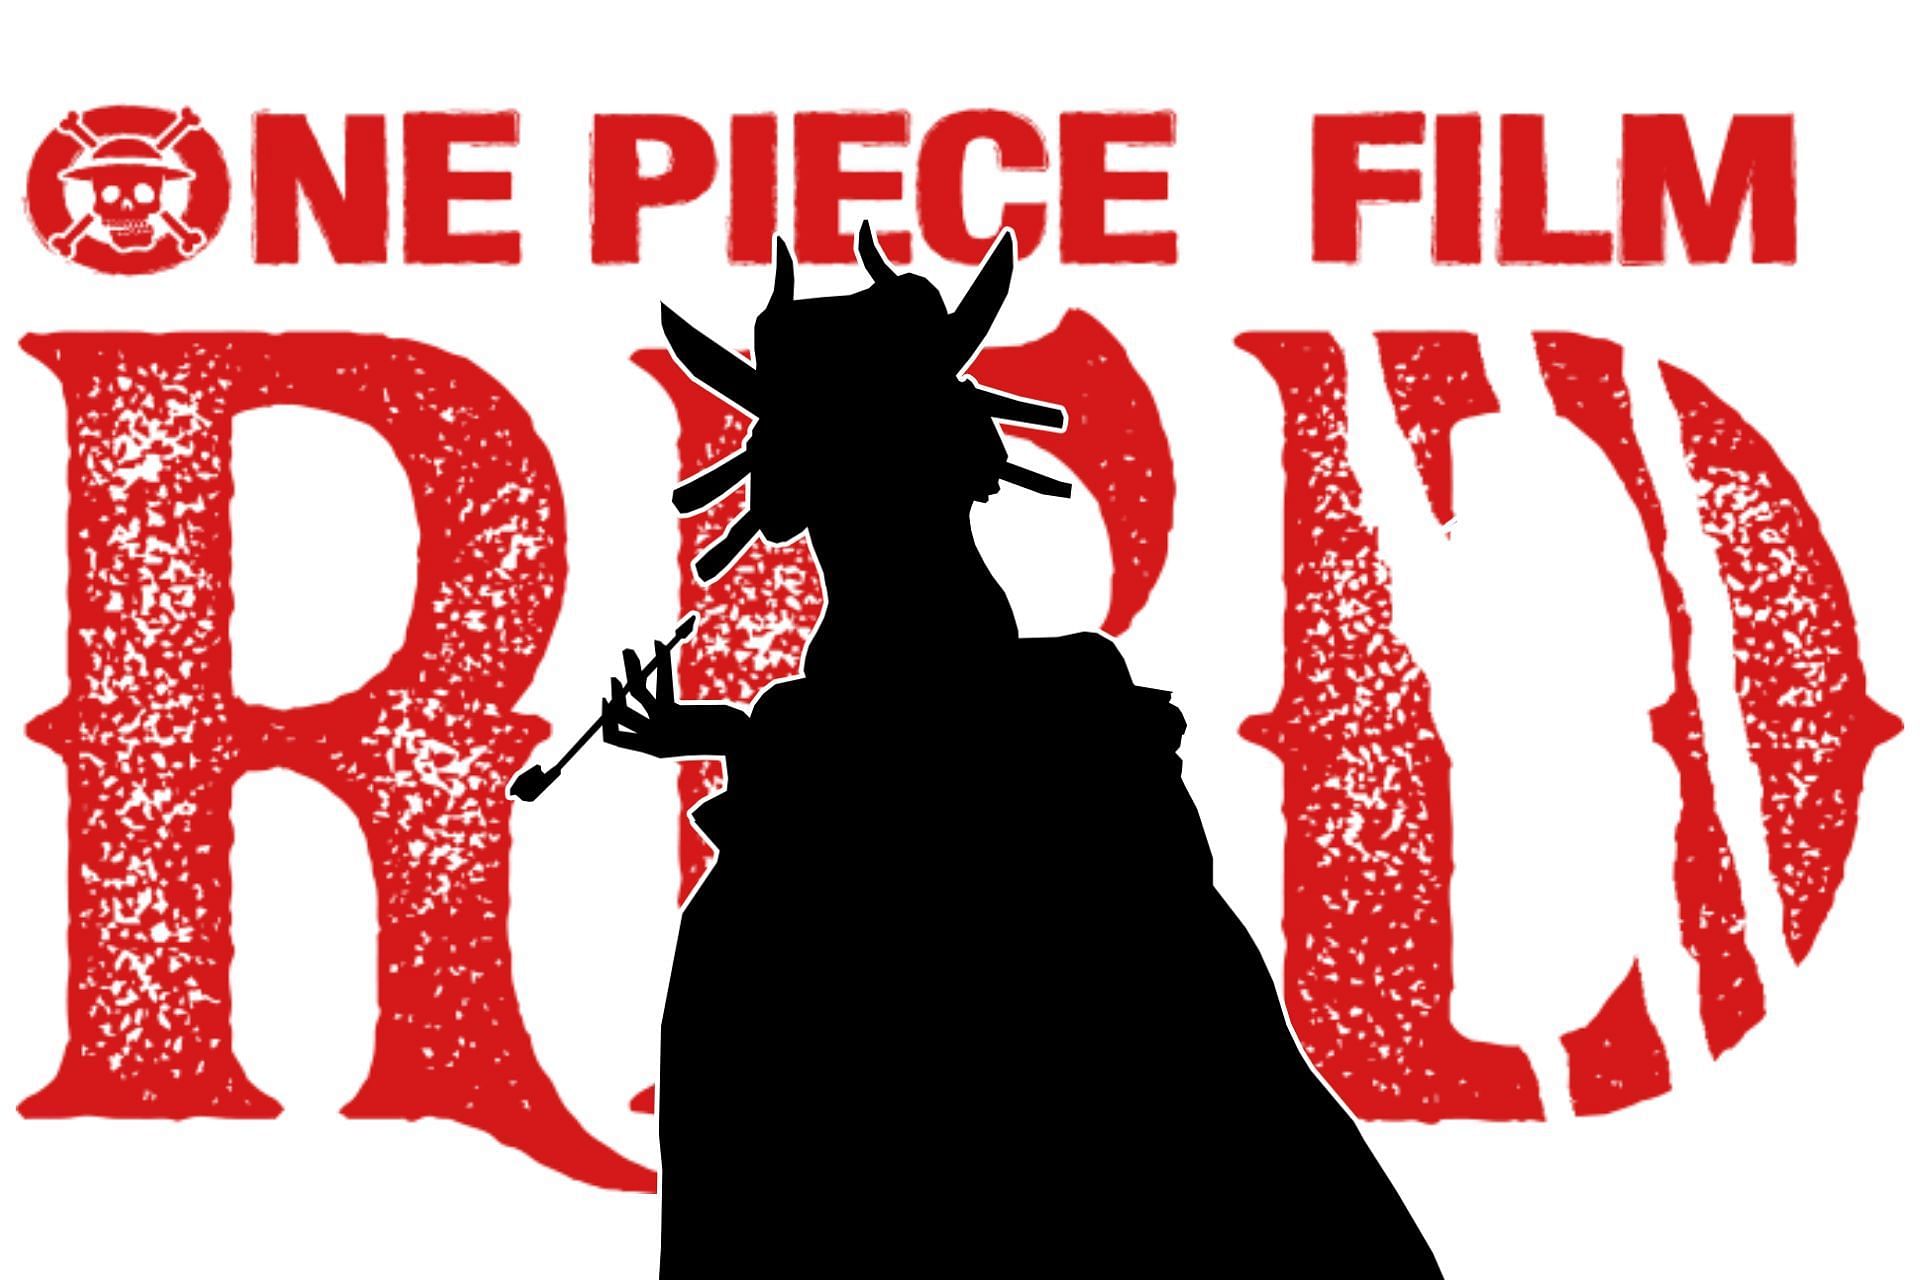 Piece film red one One Piece